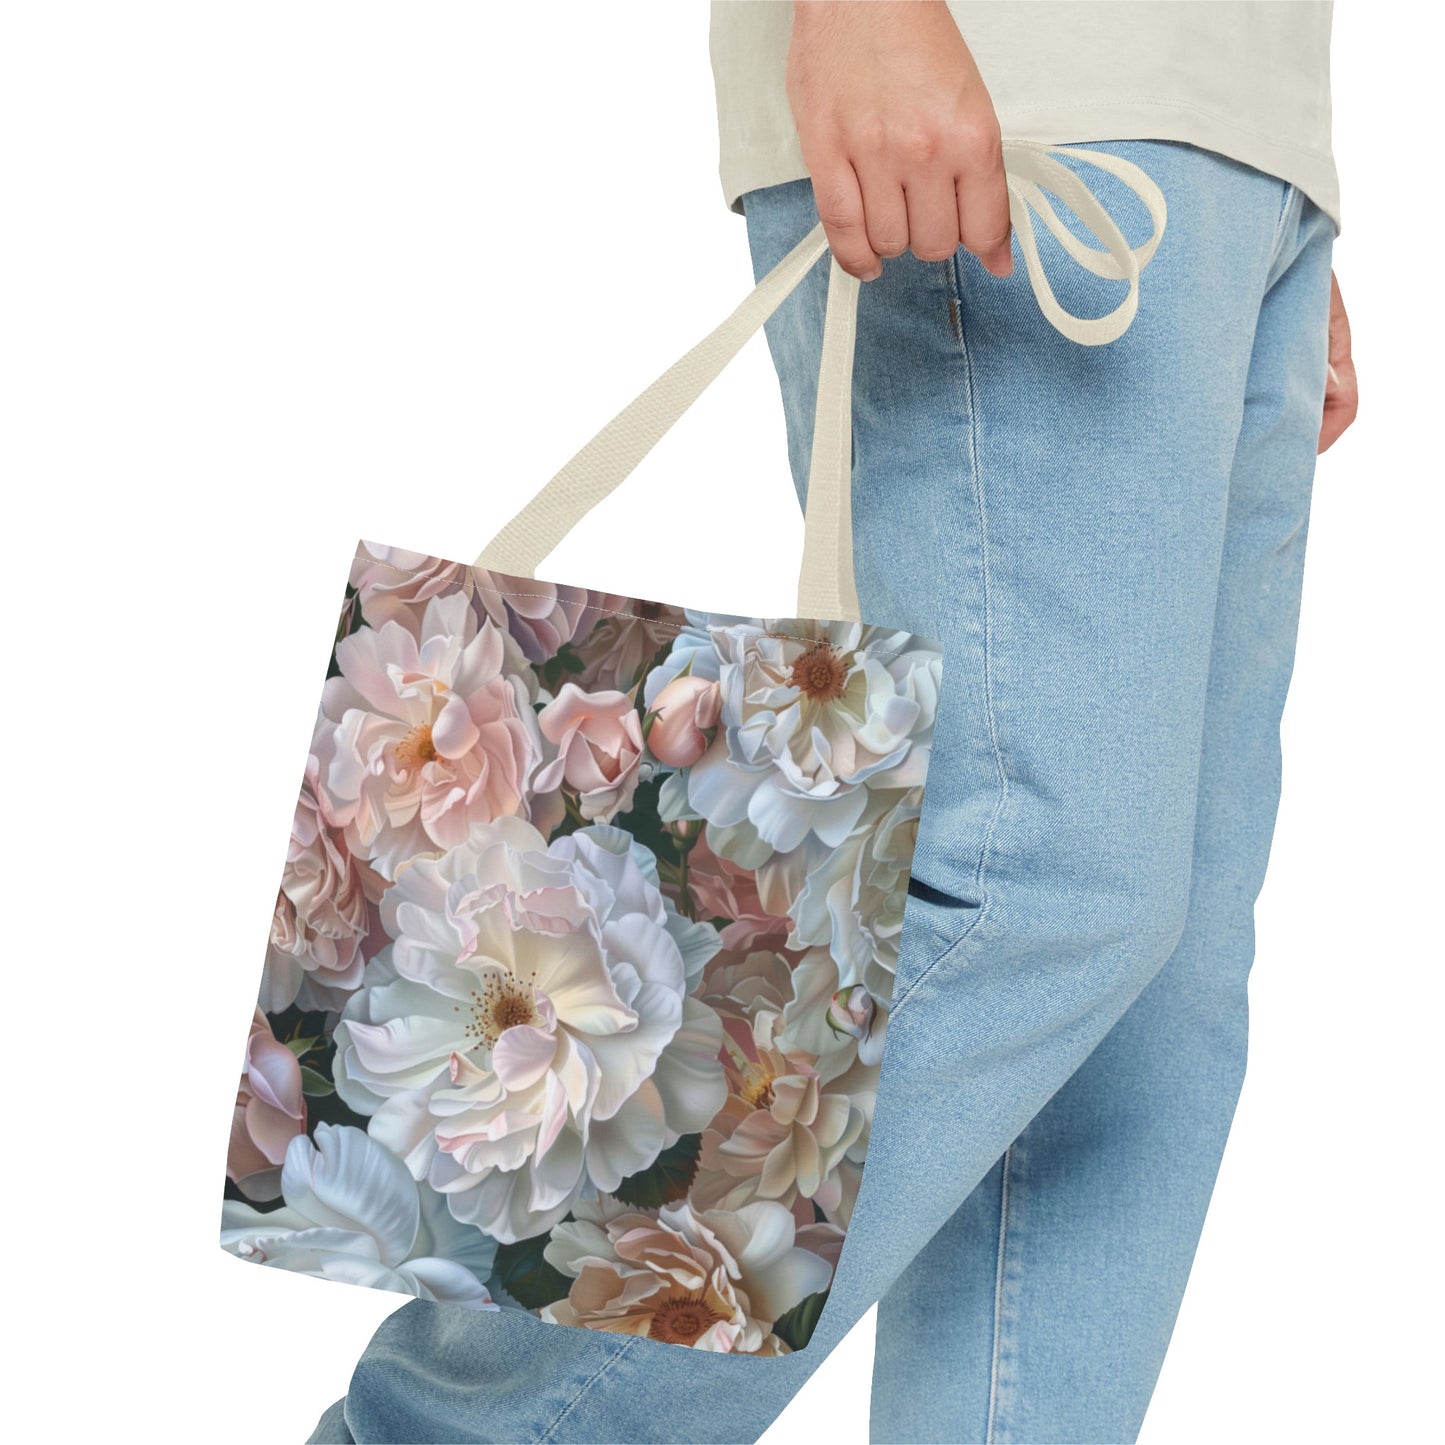 Roses Tote Bag